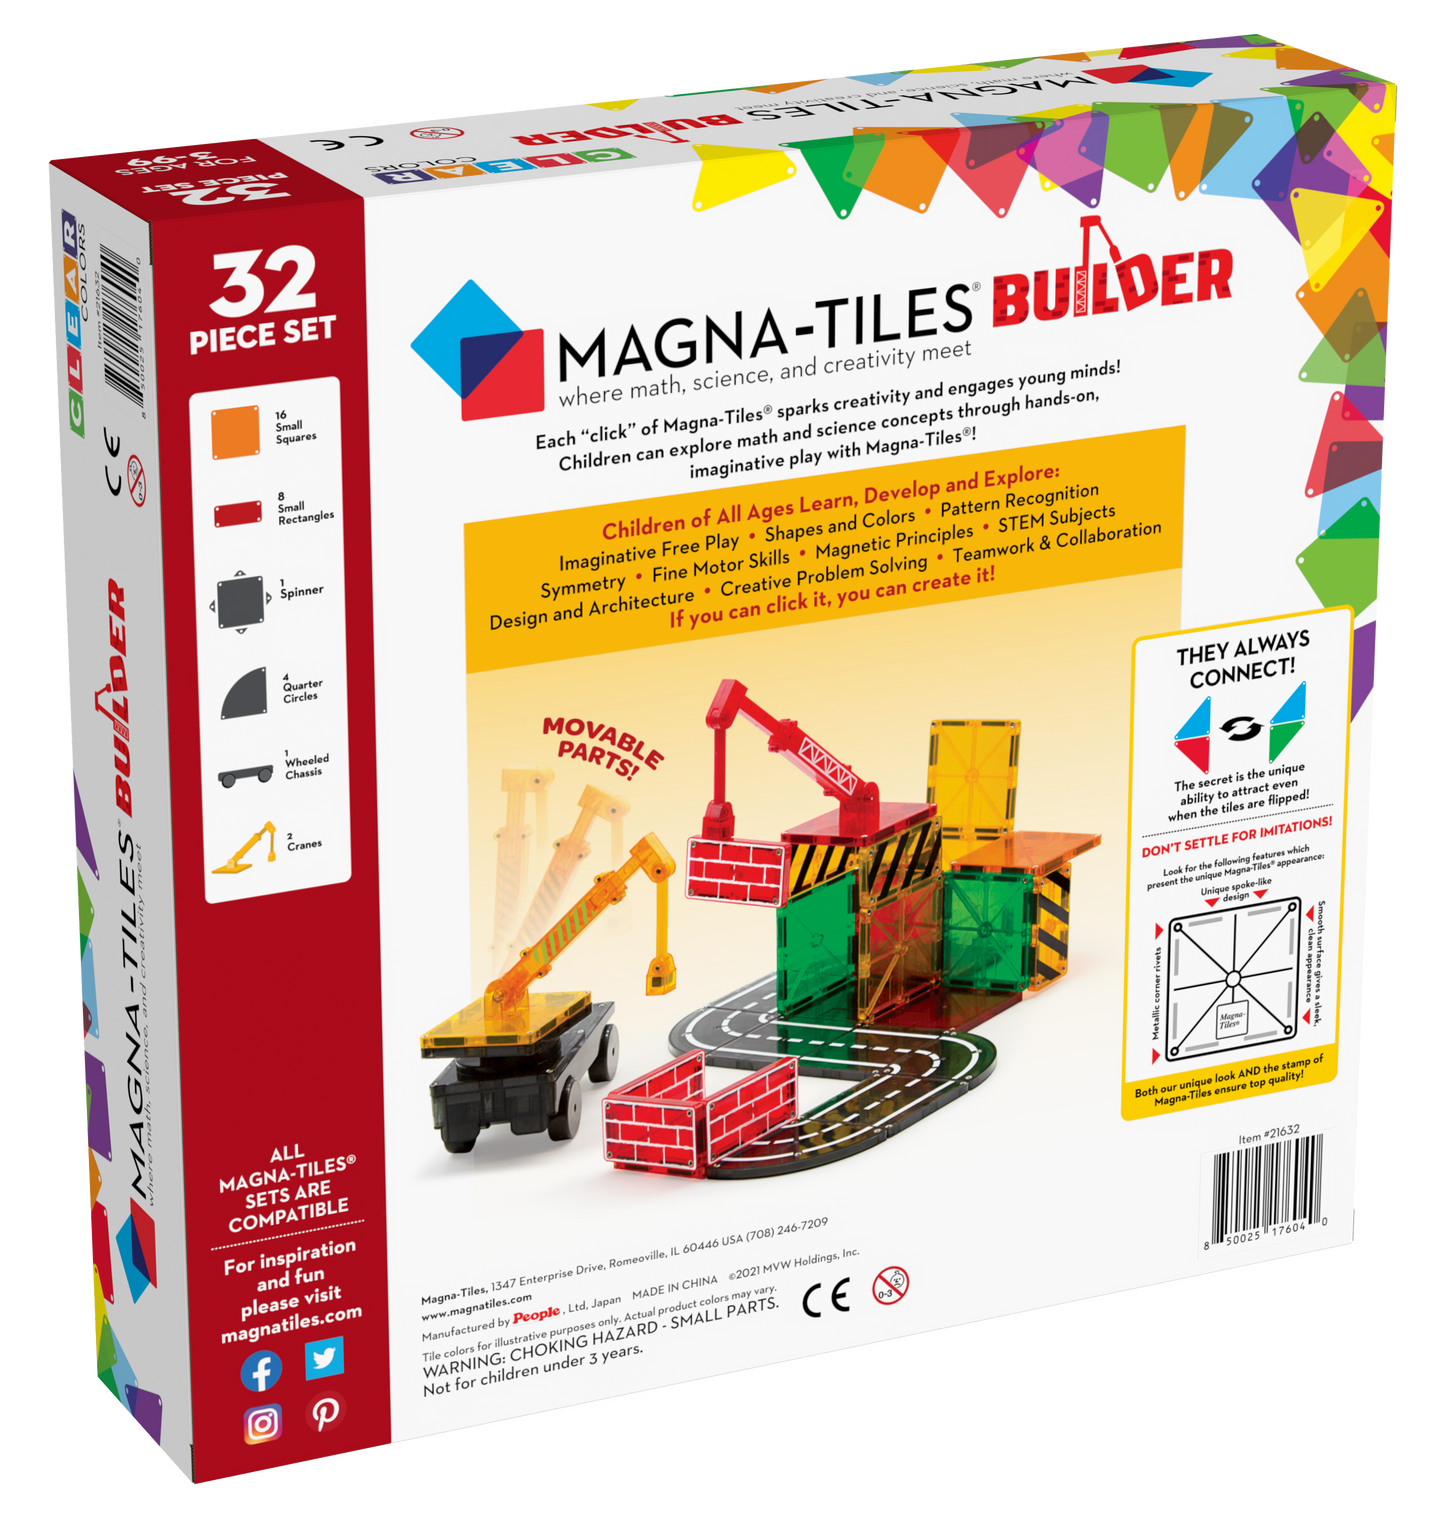 Builder 32pcs Set by MAGNA-TILES